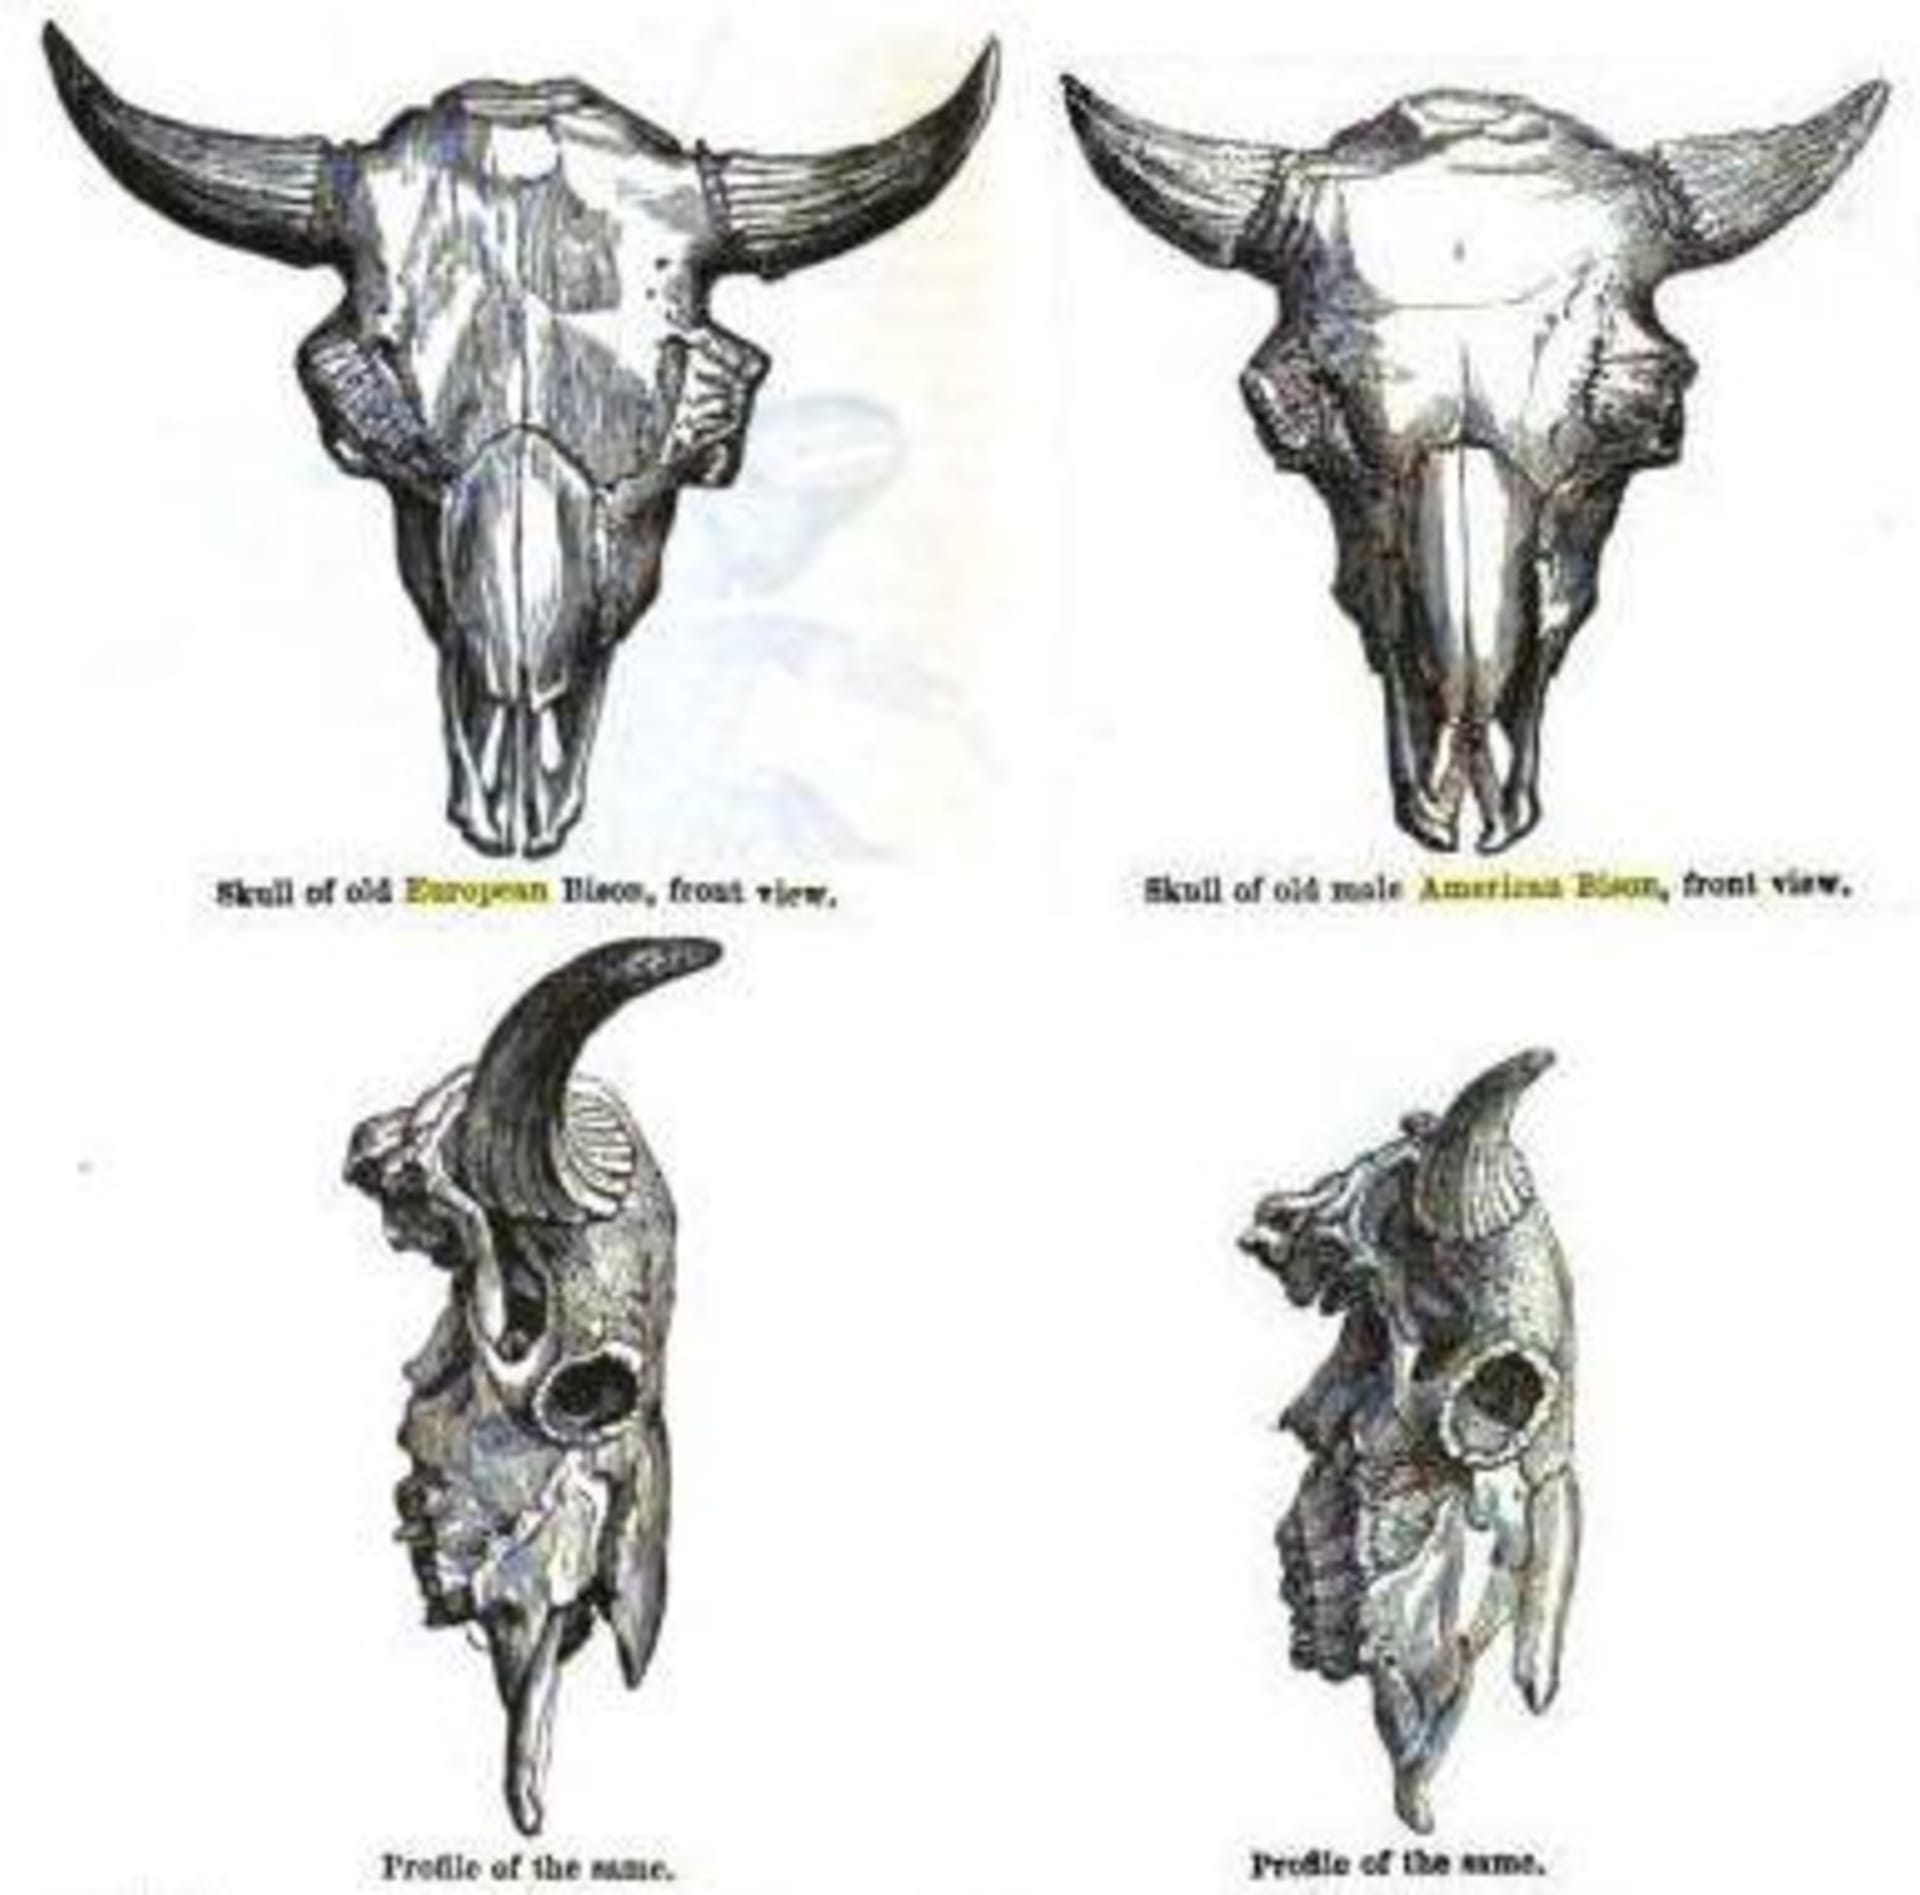 Srovnání lebek zubra (vlevo) a bizona (vpravo)